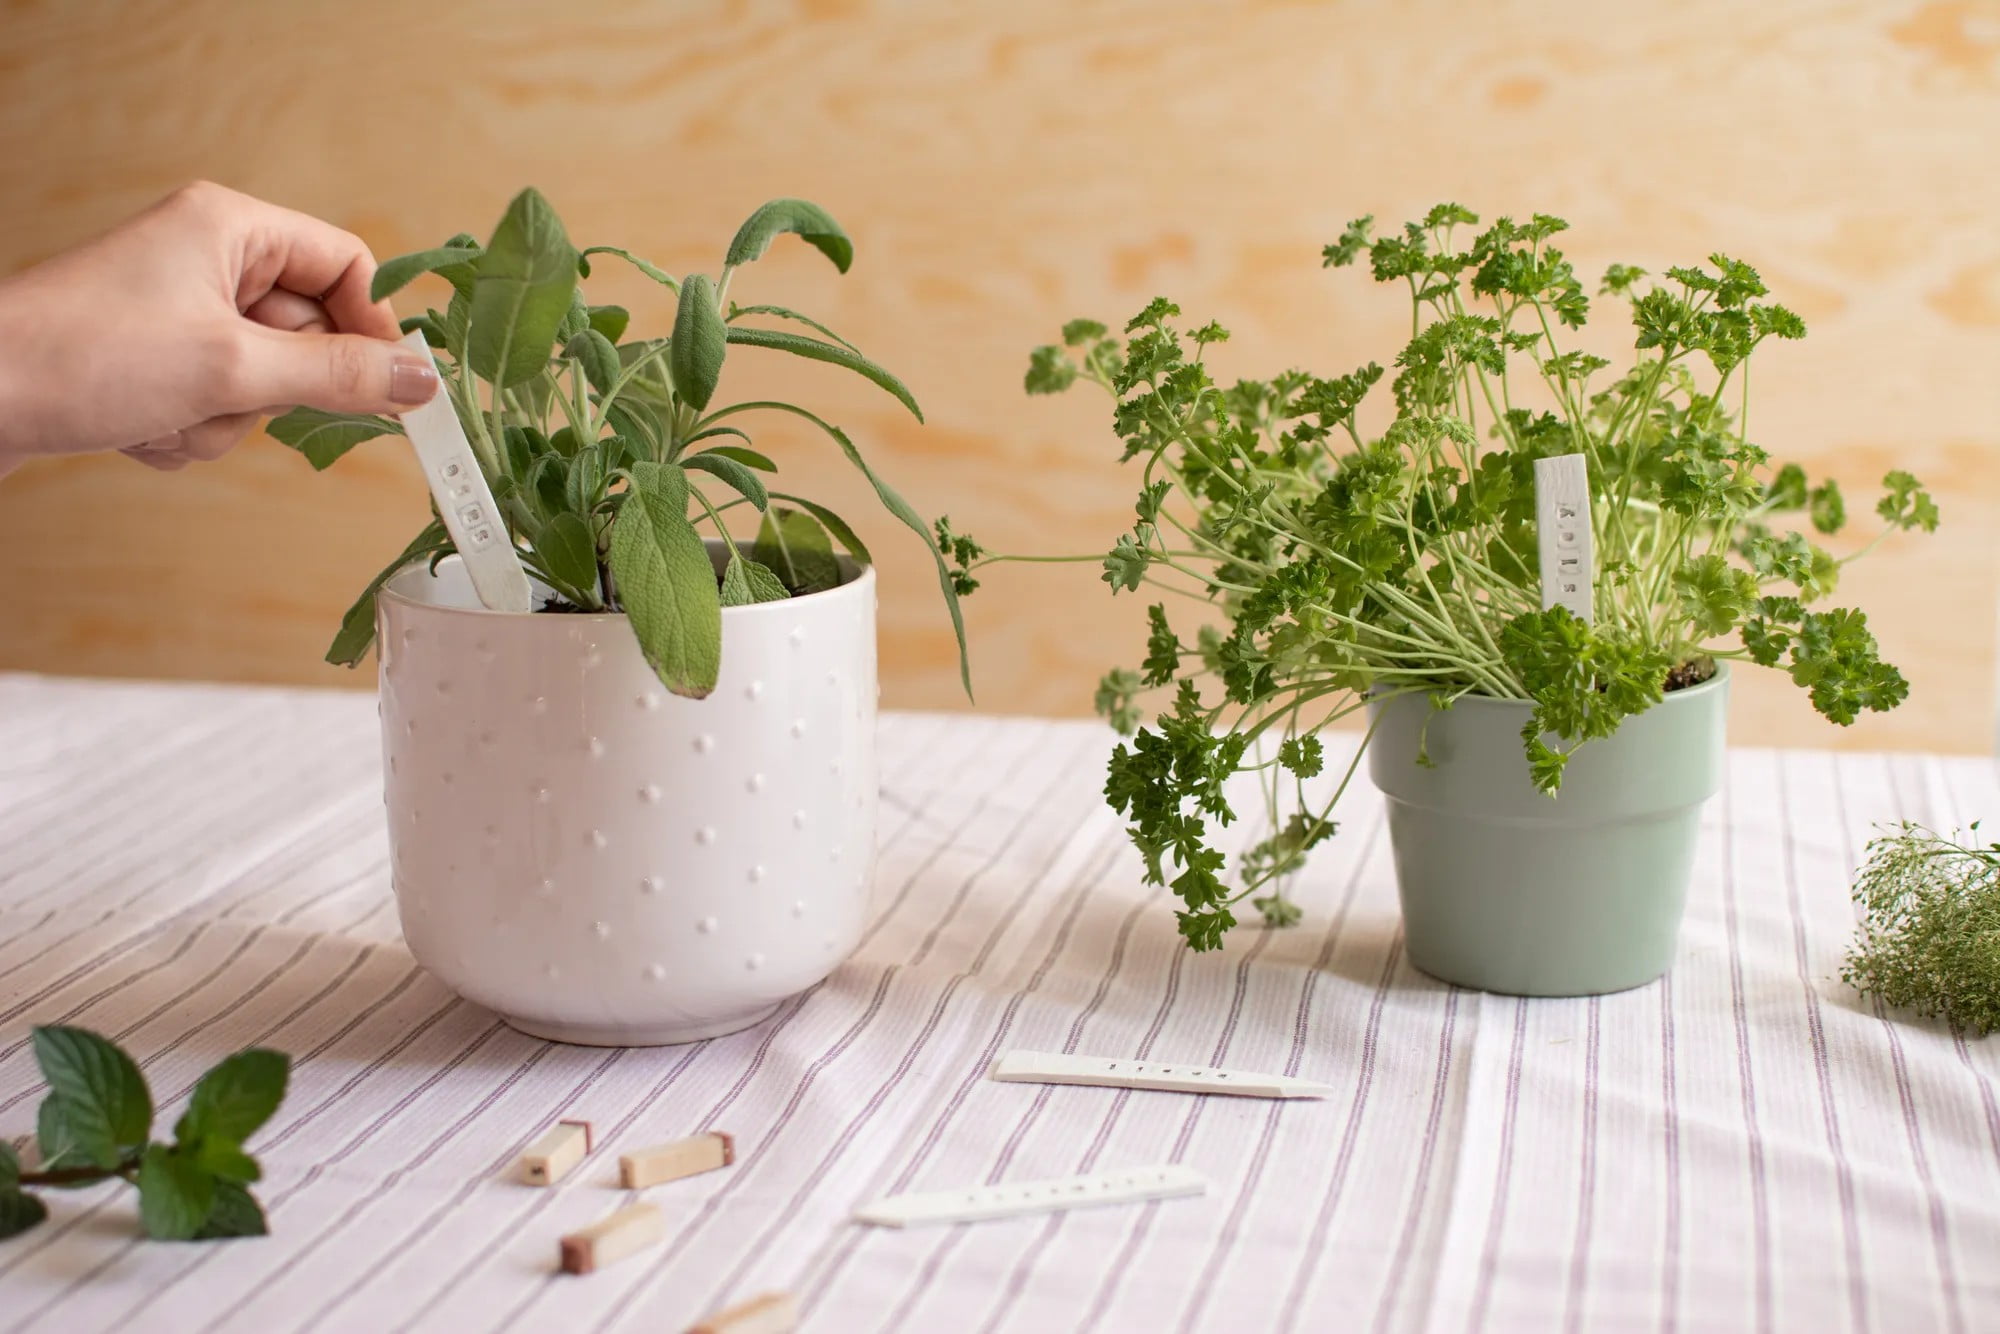 Pořiďte si praktické štítky na bylinky, ať víte, co jsou jednotlivé rostlinky zač! Můžete si je i vyrobit ze samotvrdnoucí hmoty.